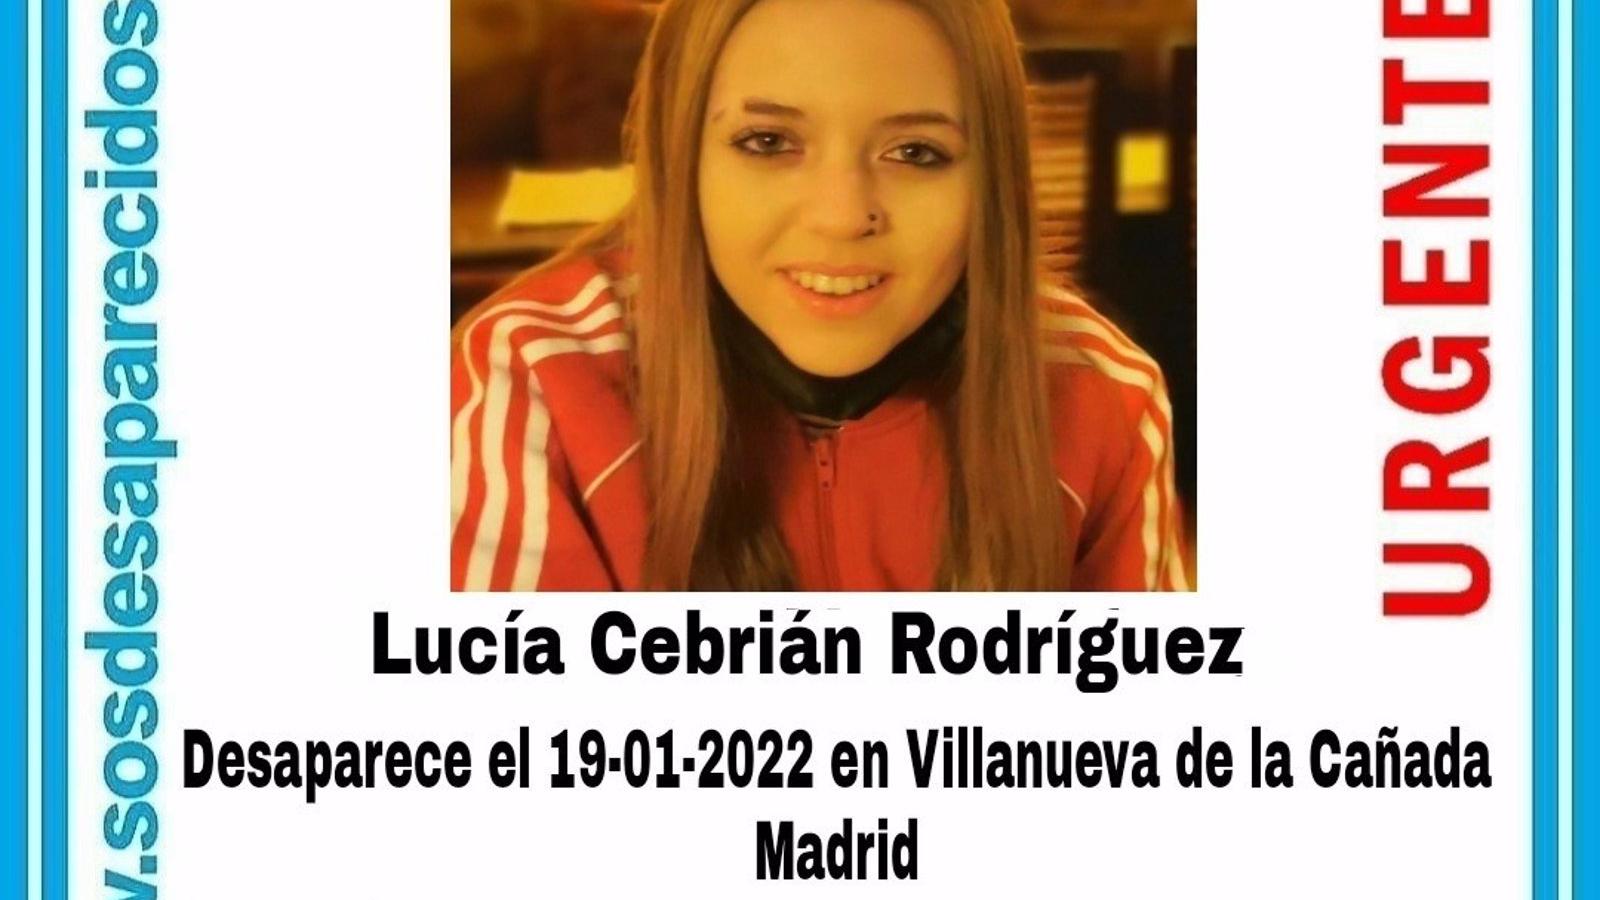 Buscan a una joven de 13 años desaparecida el pasado miércoles en Villanueva de la Cañada